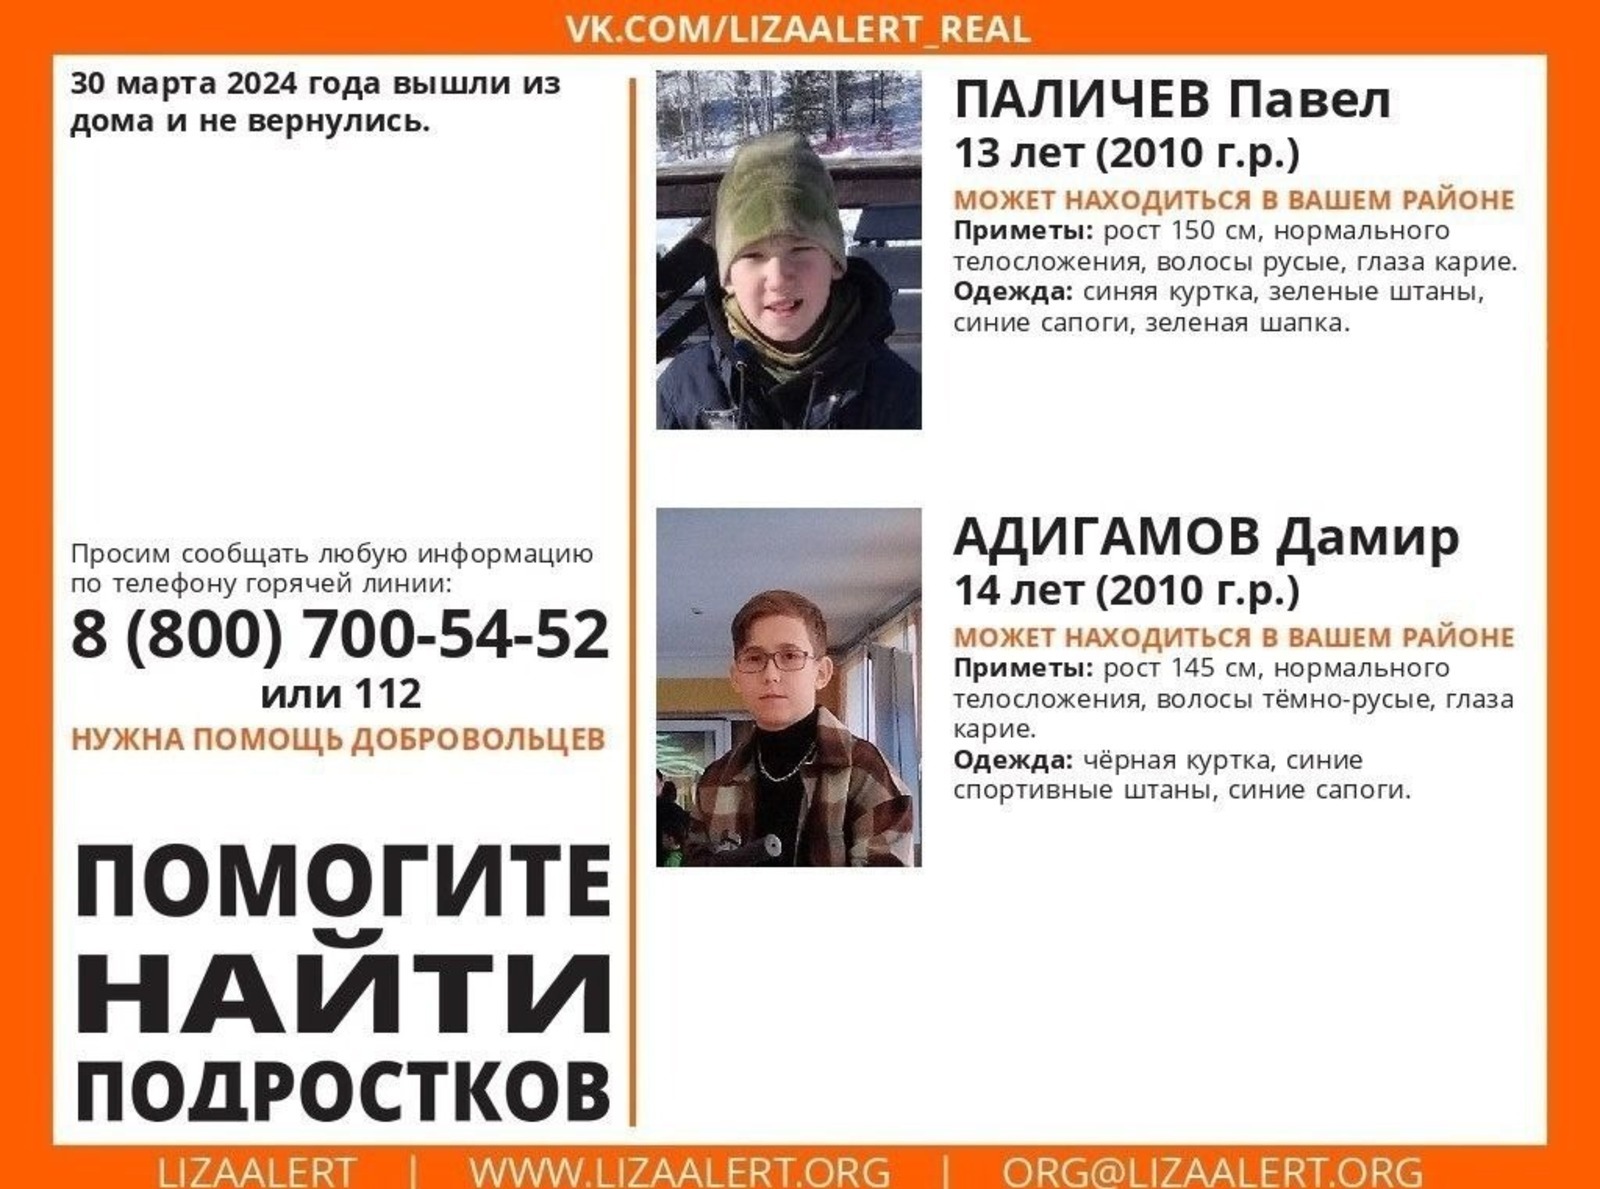 Максим Забелин призвал жителей Башкирии помочь в поисках пропавших подростков